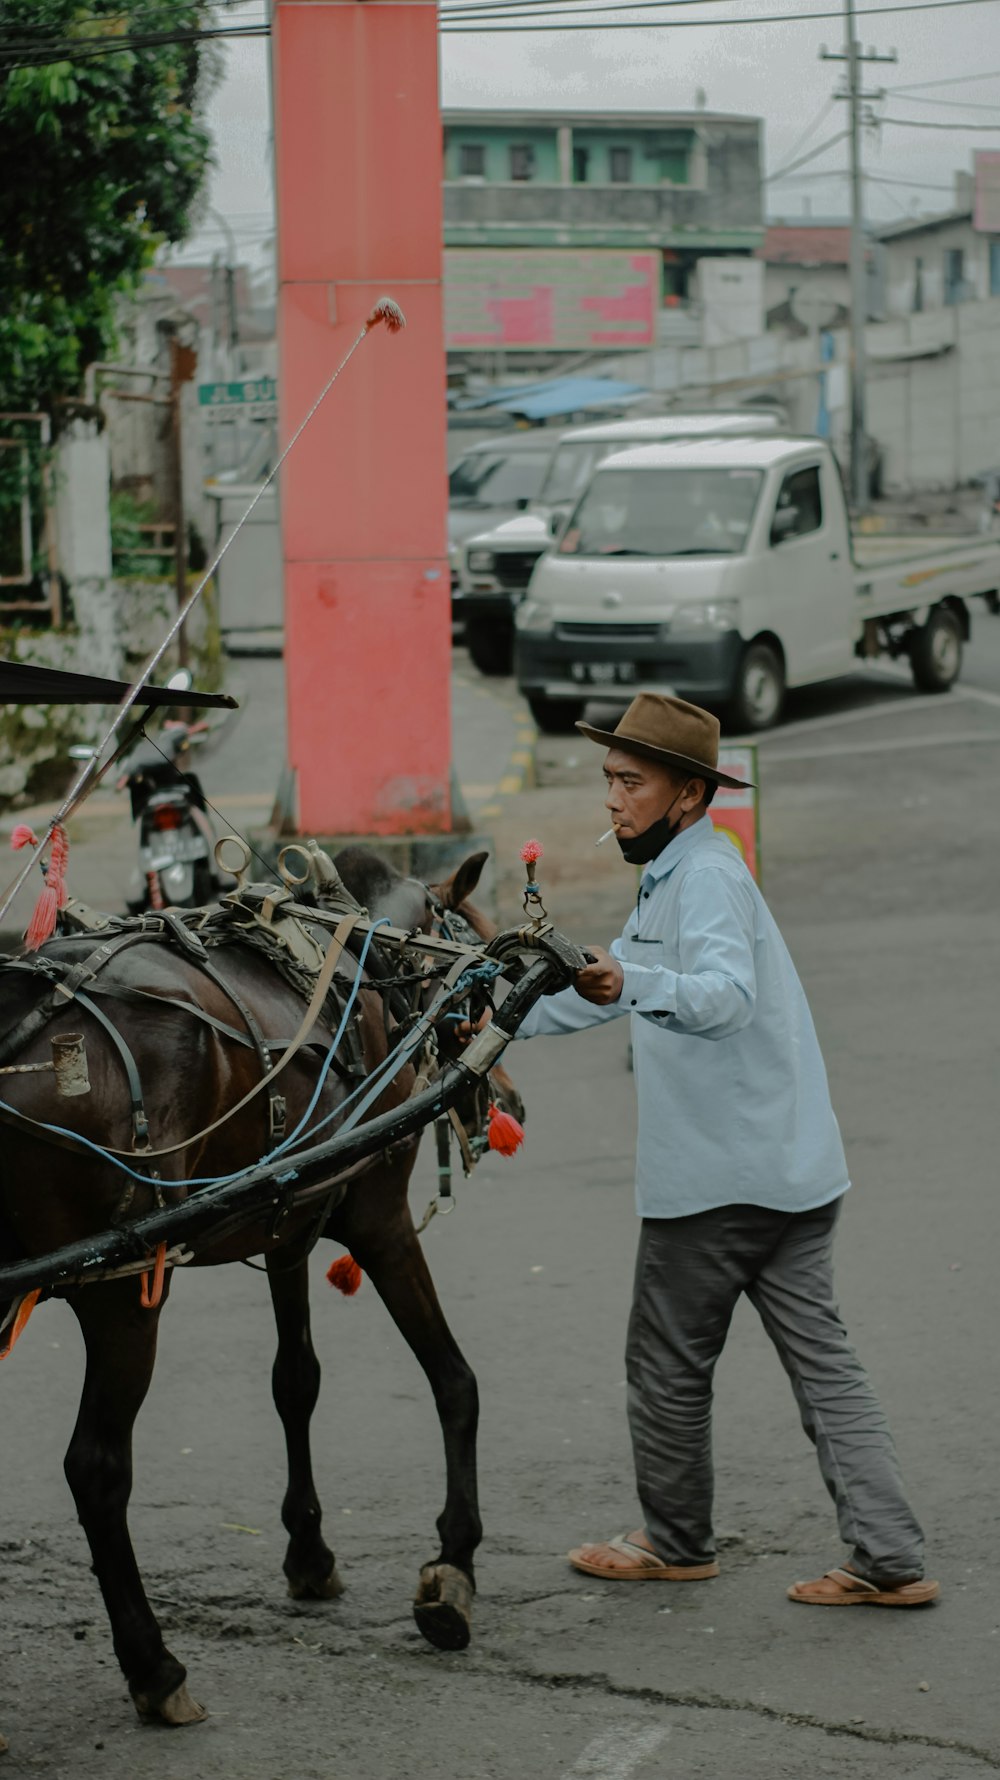 a man leading a horse drawn carriage down a street